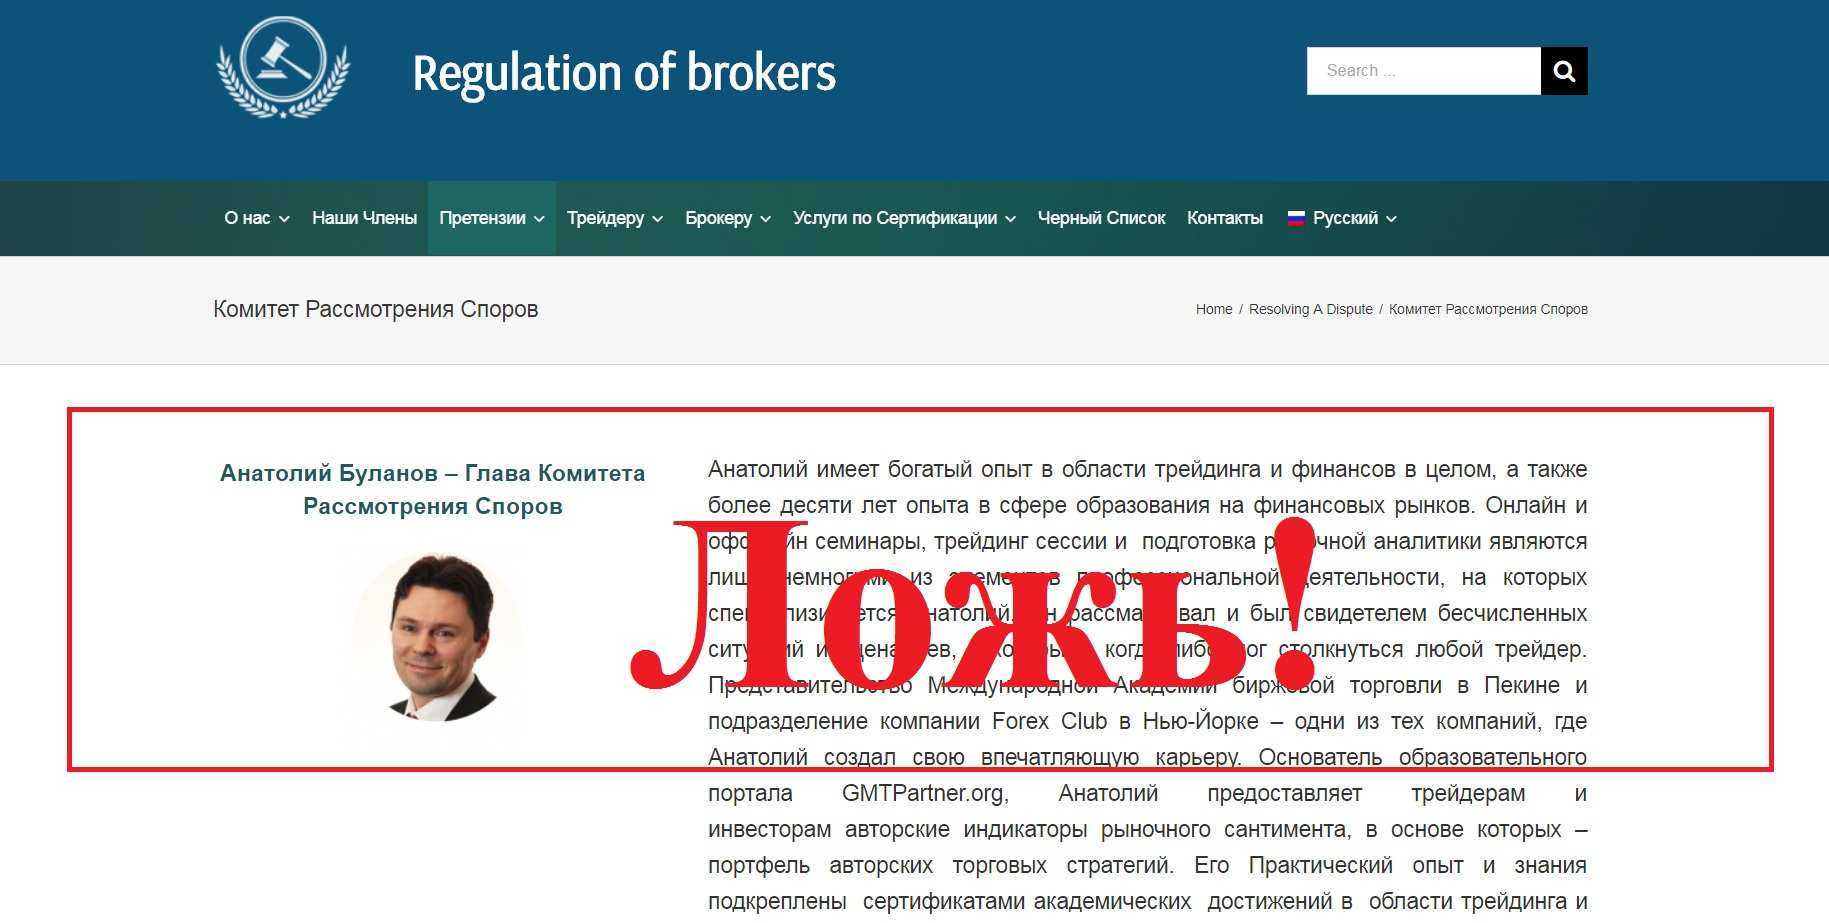 Regulation of brokers - отзывы и обзор regofbrokers.com